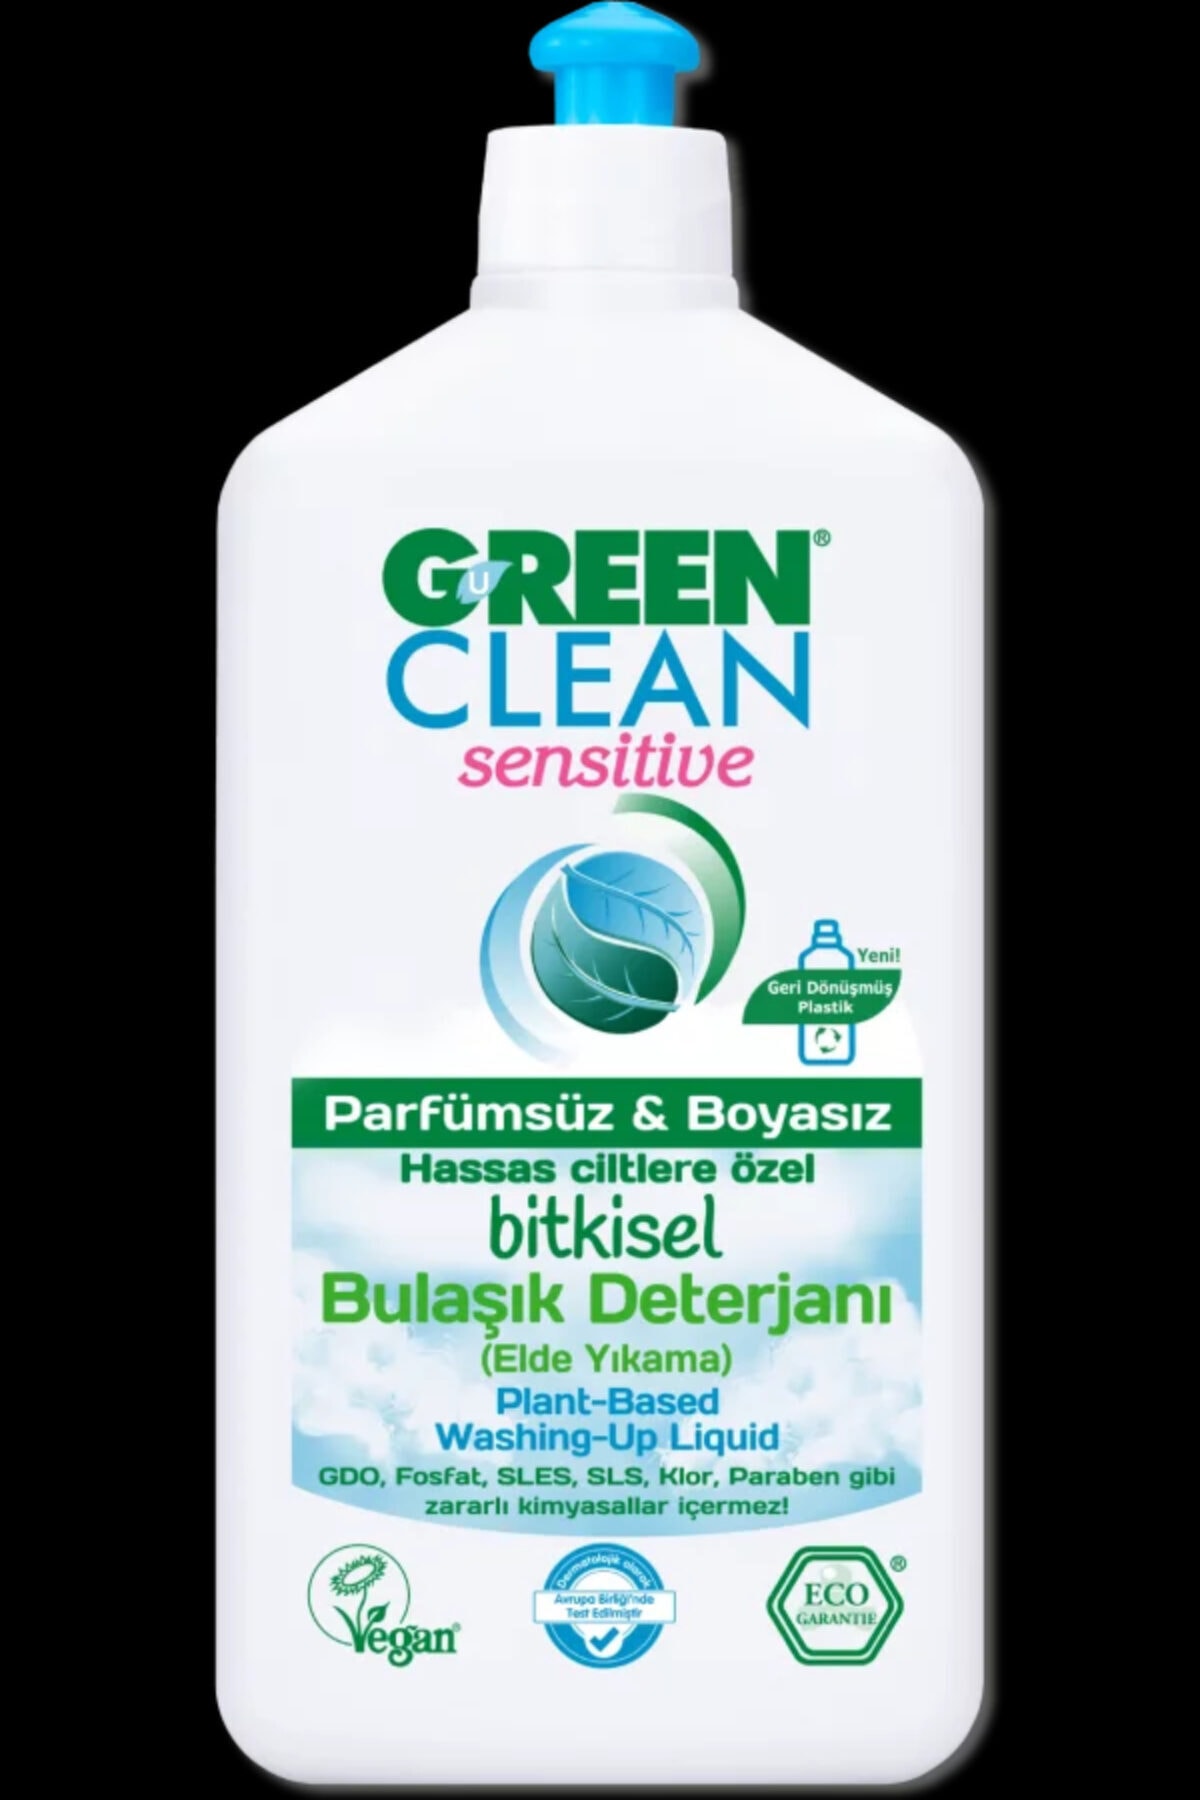 U Green Clean Green Clean Sensitive Parfümsüz & Boyasız Bitkisel Bulaşık Deterjanı 500 ml